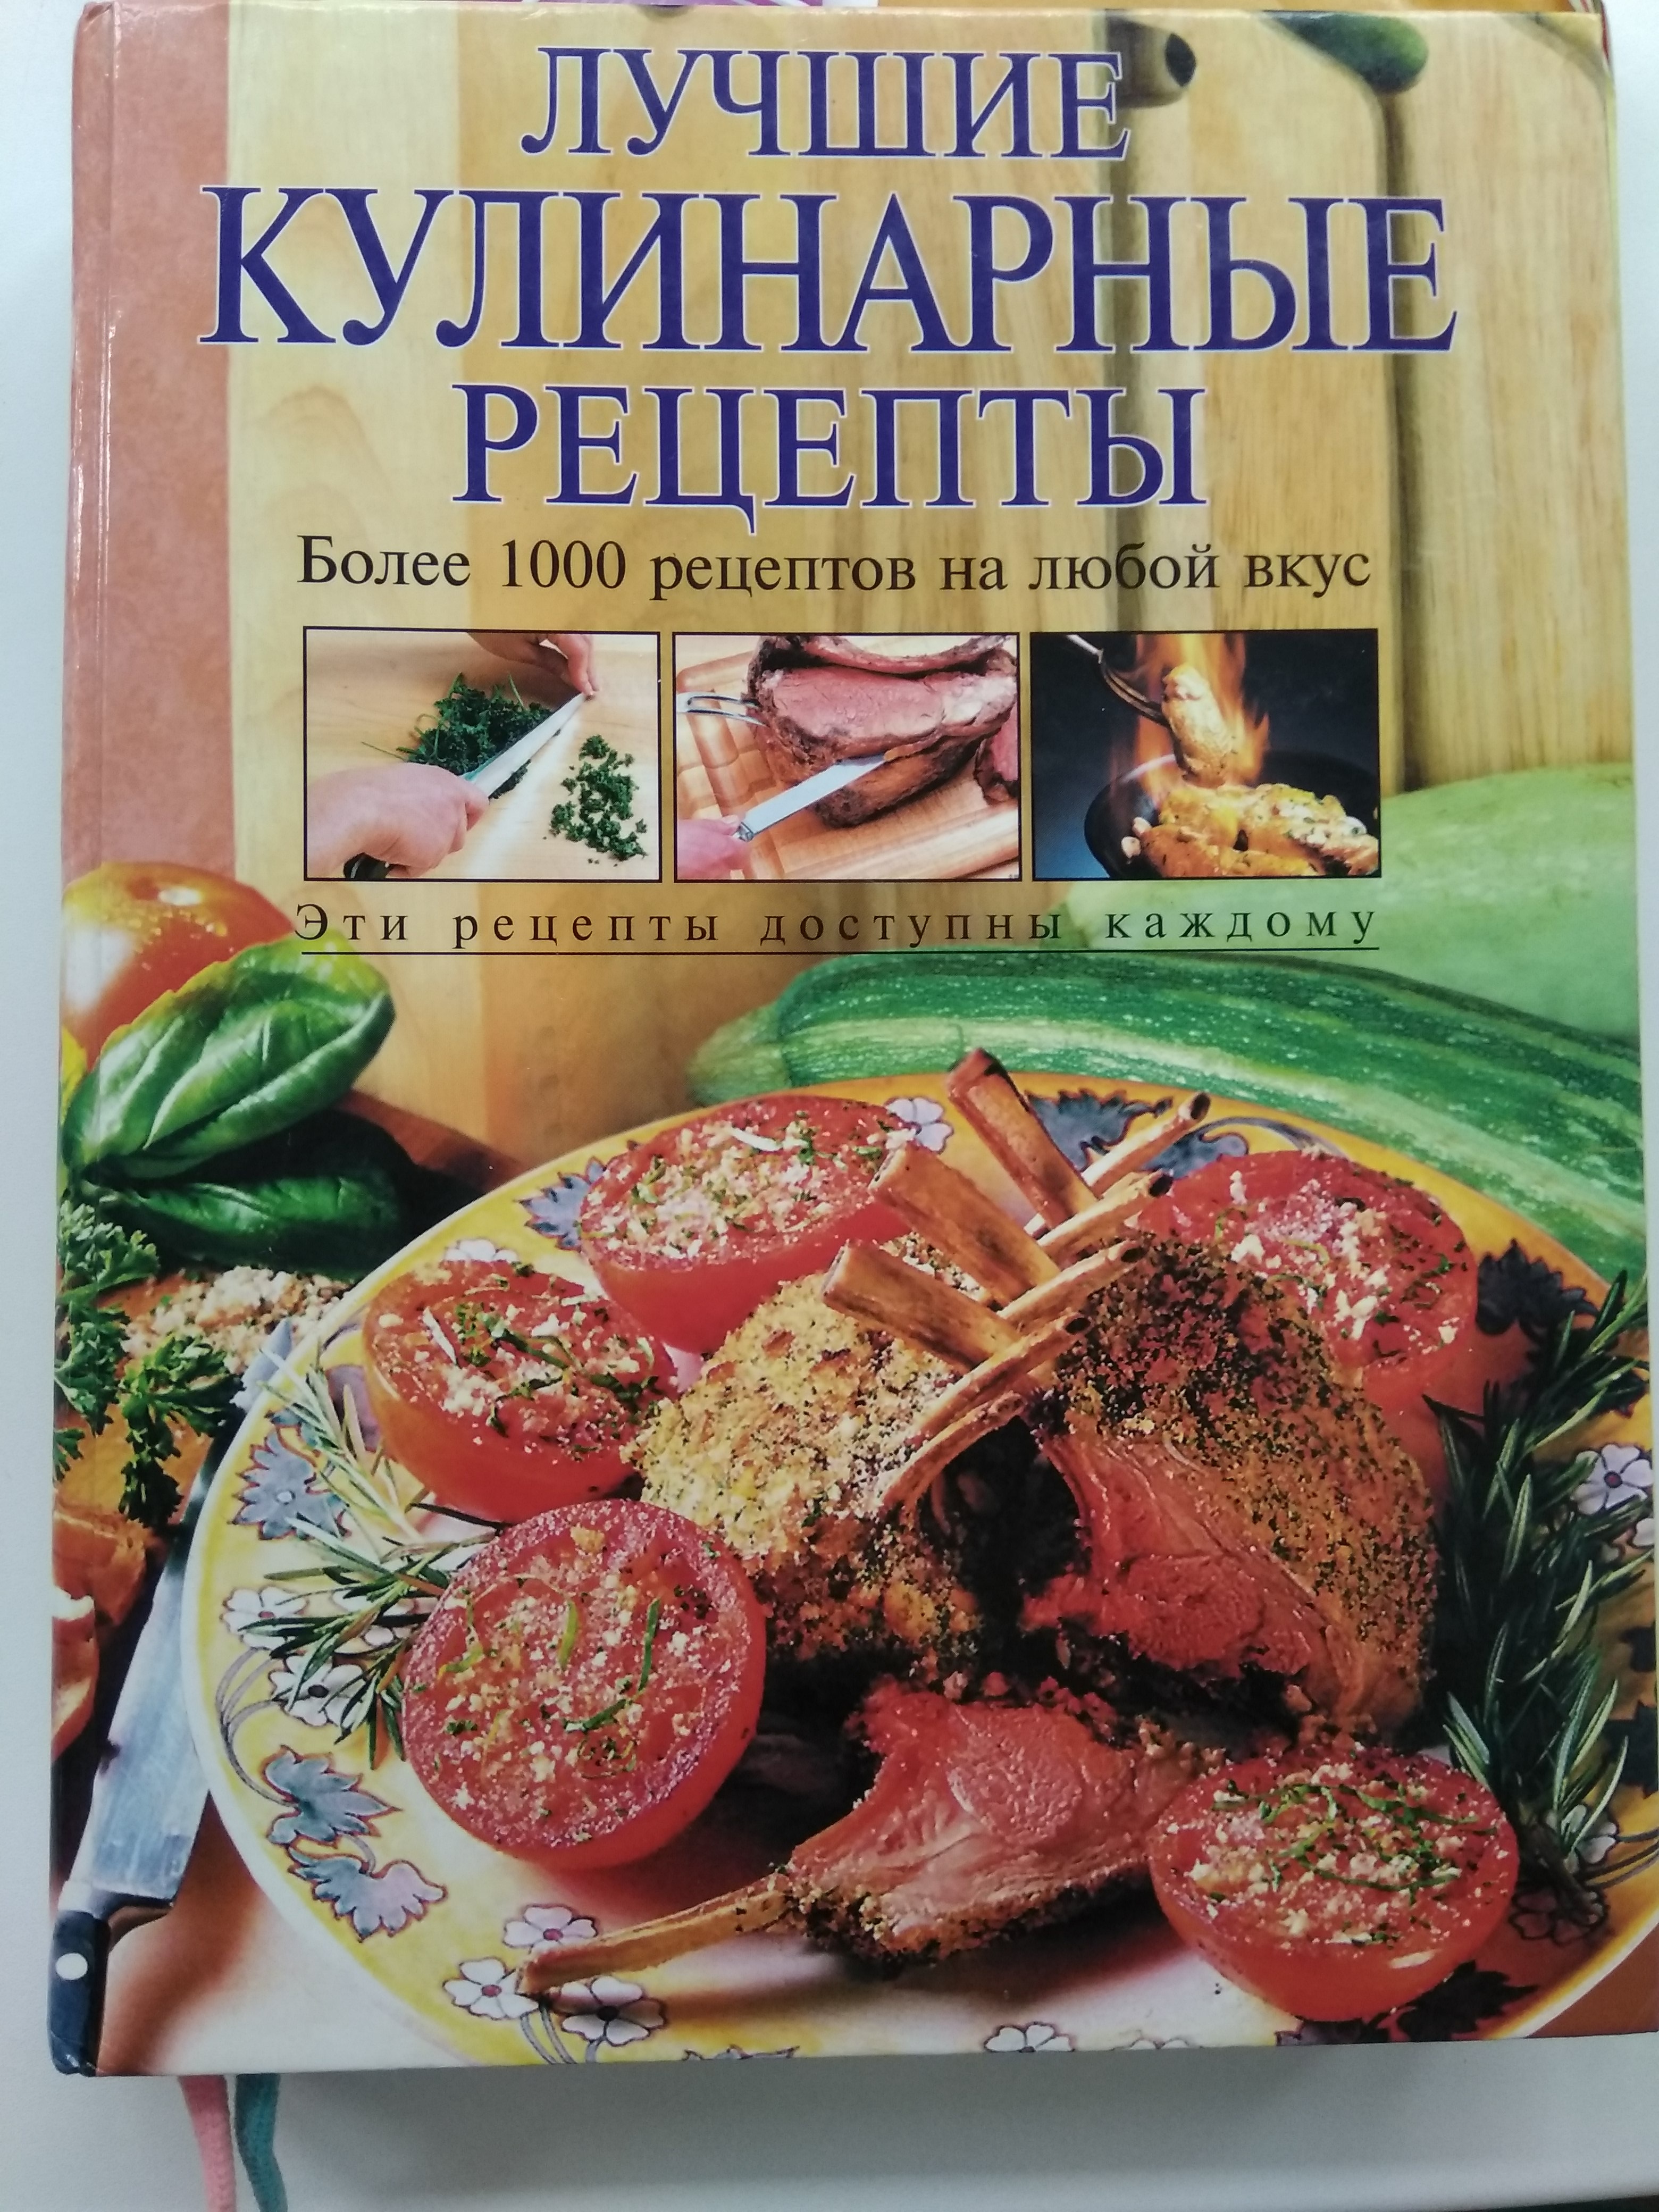 Книга правильных рецептов. Кулинарные рецепты. Лучшие Кулинарные рецепты книга. Лучшие рецепты кулинарии. Лучшие Кулинарные книги.